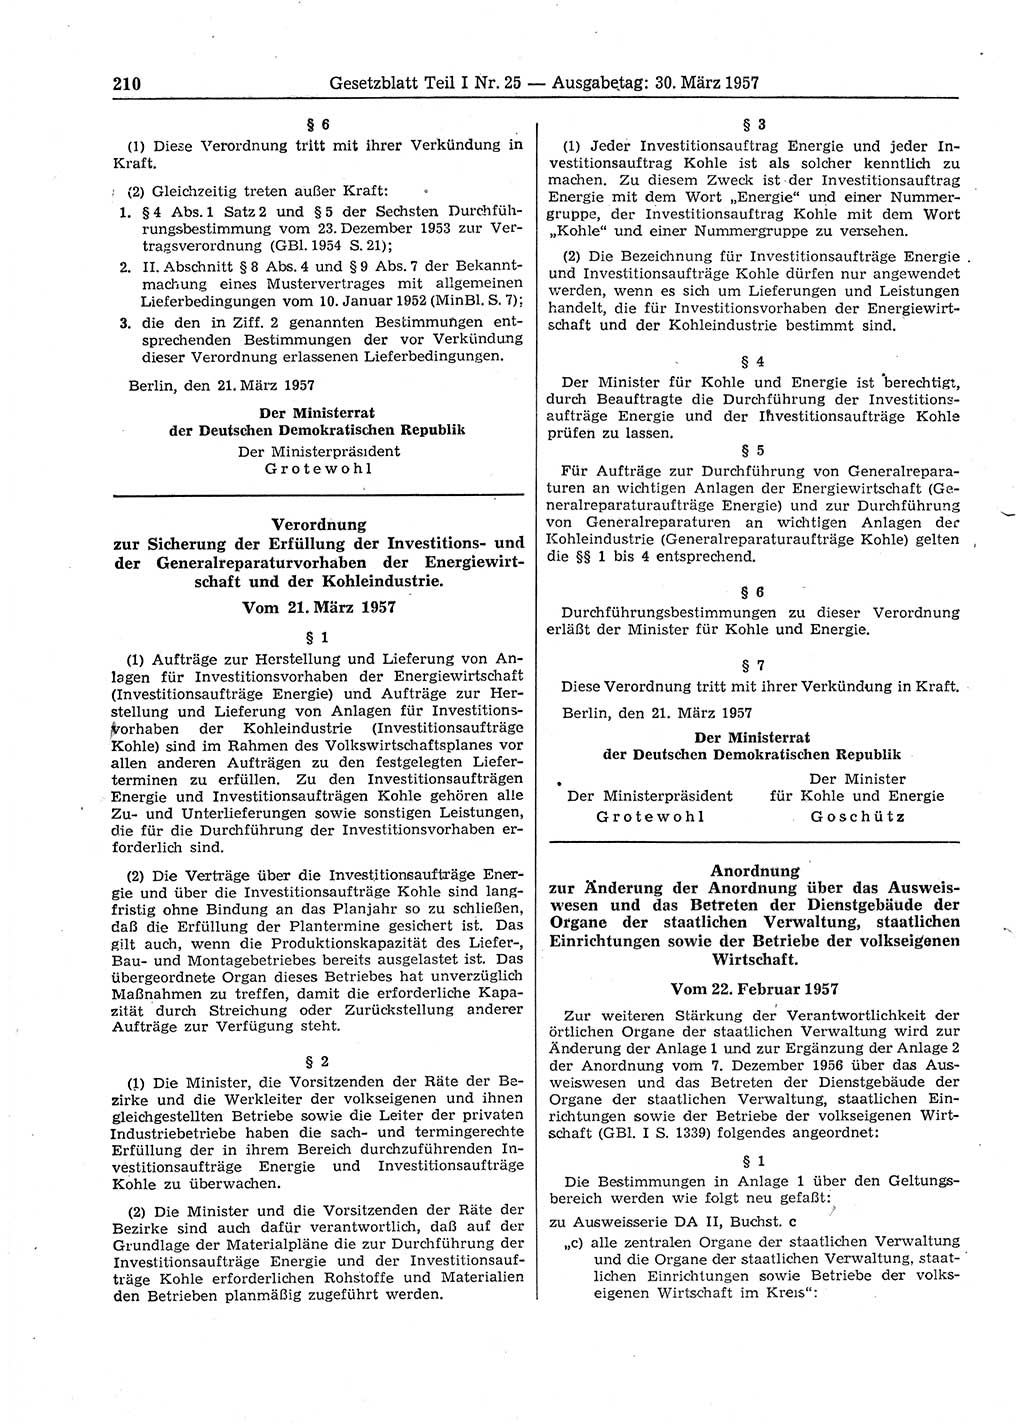 Gesetzblatt (GBl.) der Deutschen Demokratischen Republik (DDR) Teil Ⅰ 1957, Seite 210 (GBl. DDR Ⅰ 1957, S. 210)